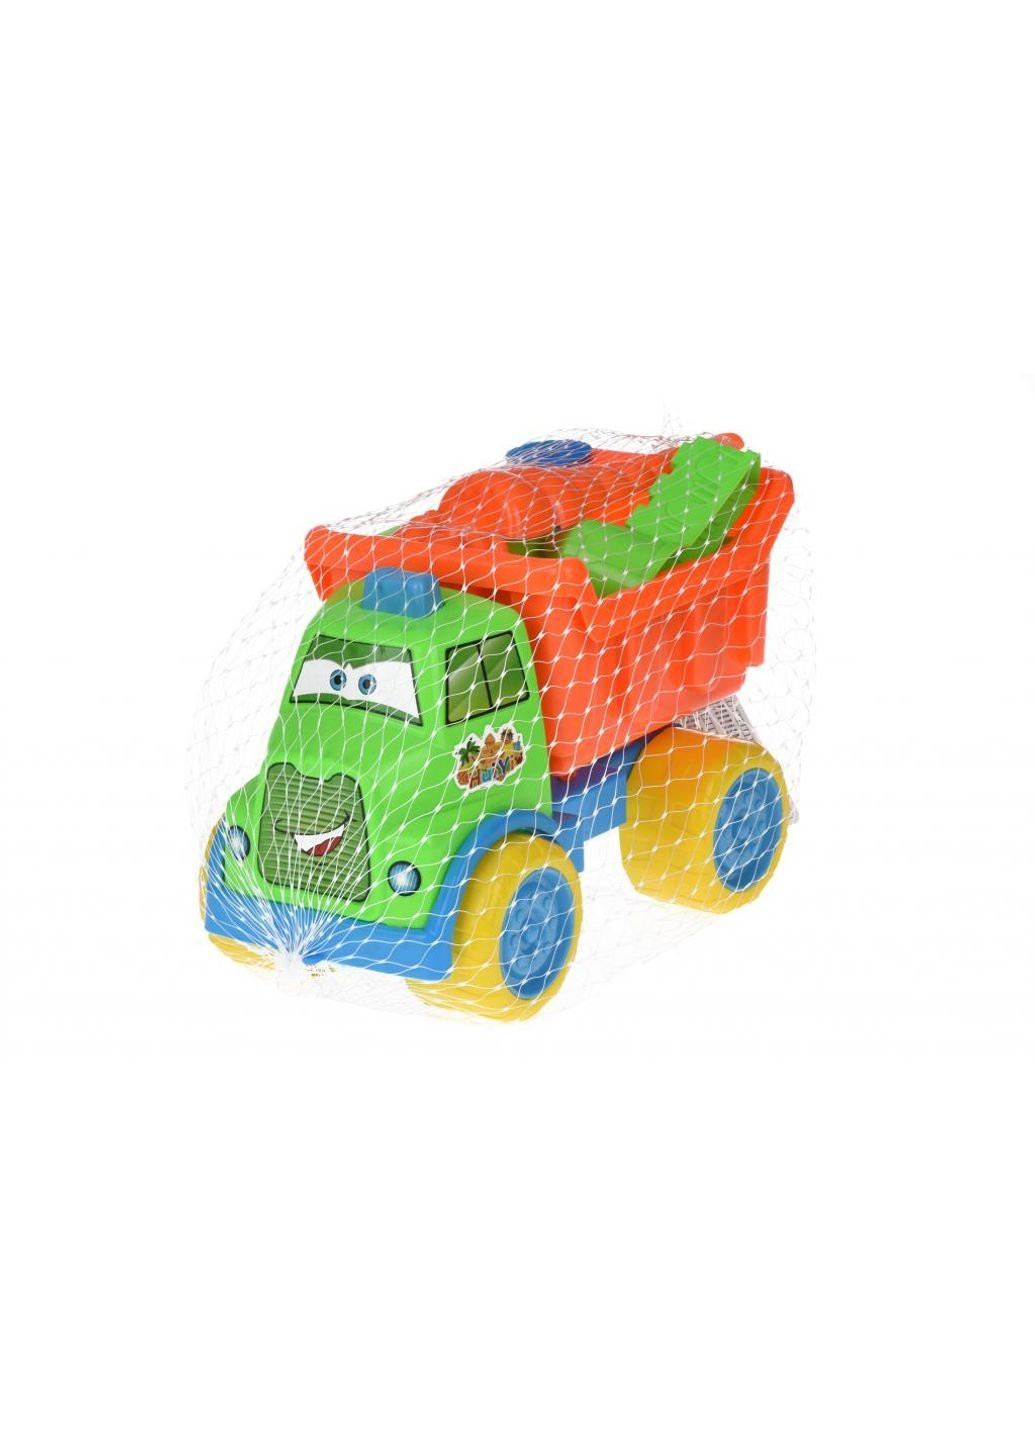 Игрушка для песка с Машинкой 7 шт (HY-1303WUt) Same Toy (254076512)